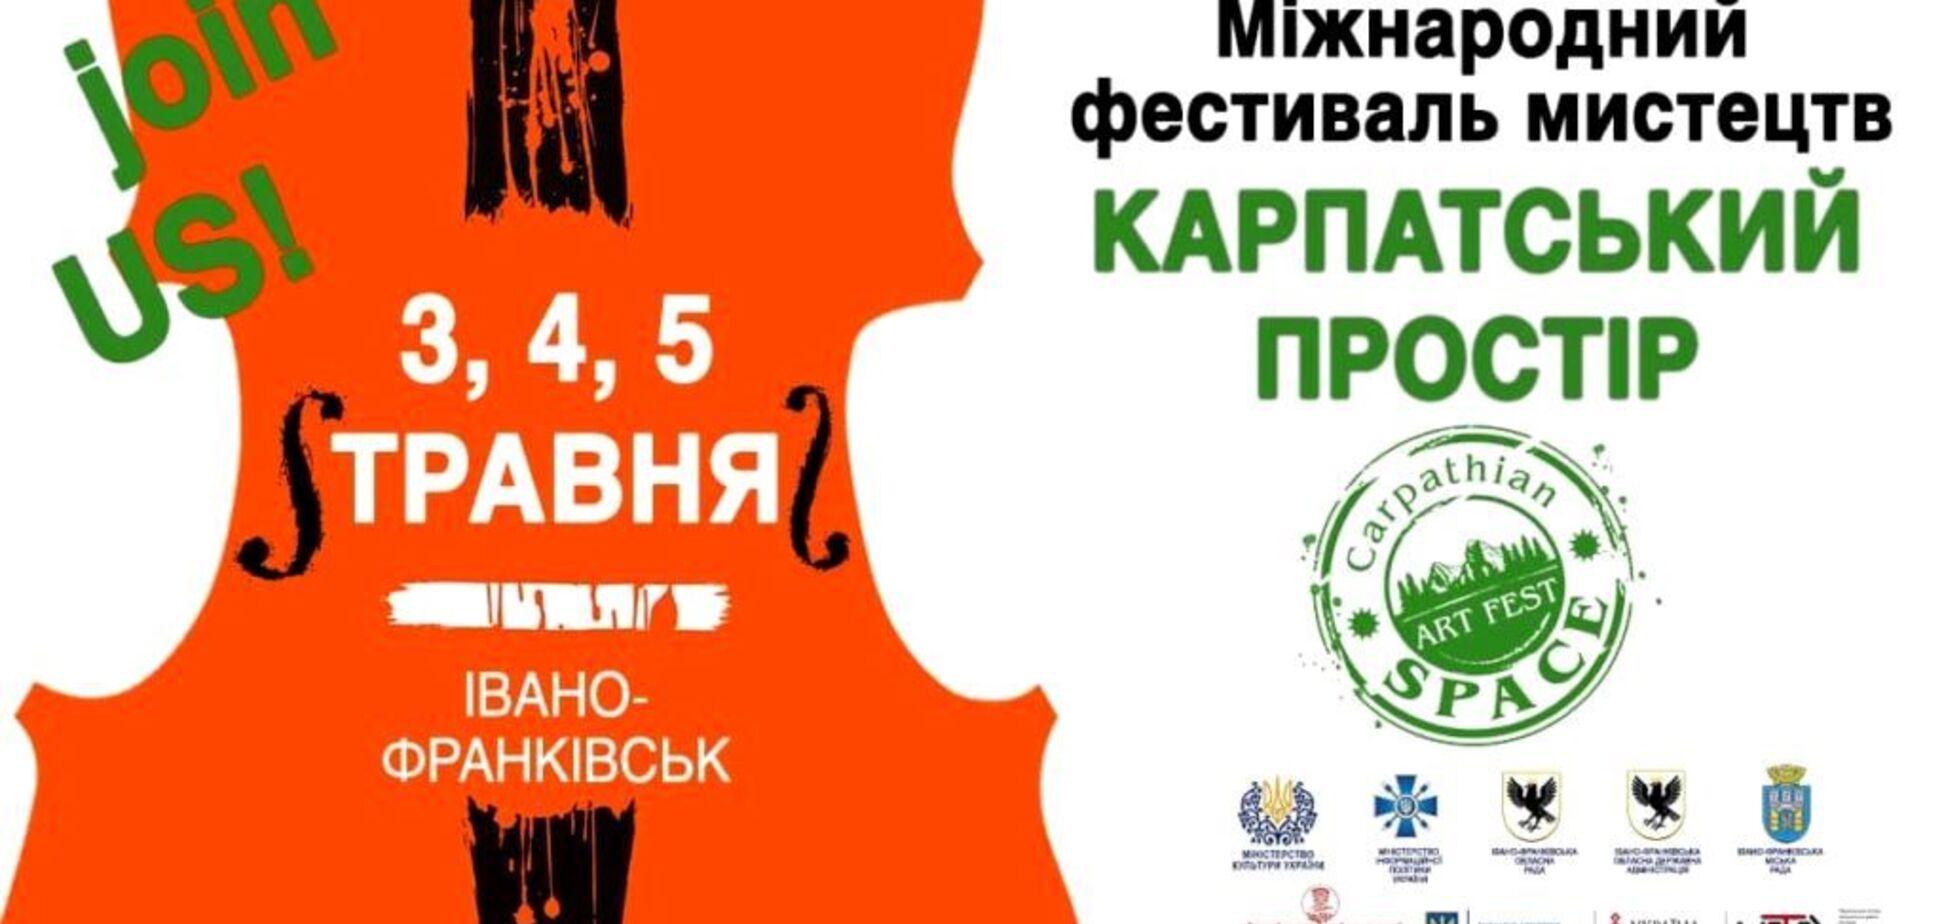 3, 4 і 5 травня в Івано-Франківську пройде Міжнародний фестиваль 'Carpathian Space 2019'